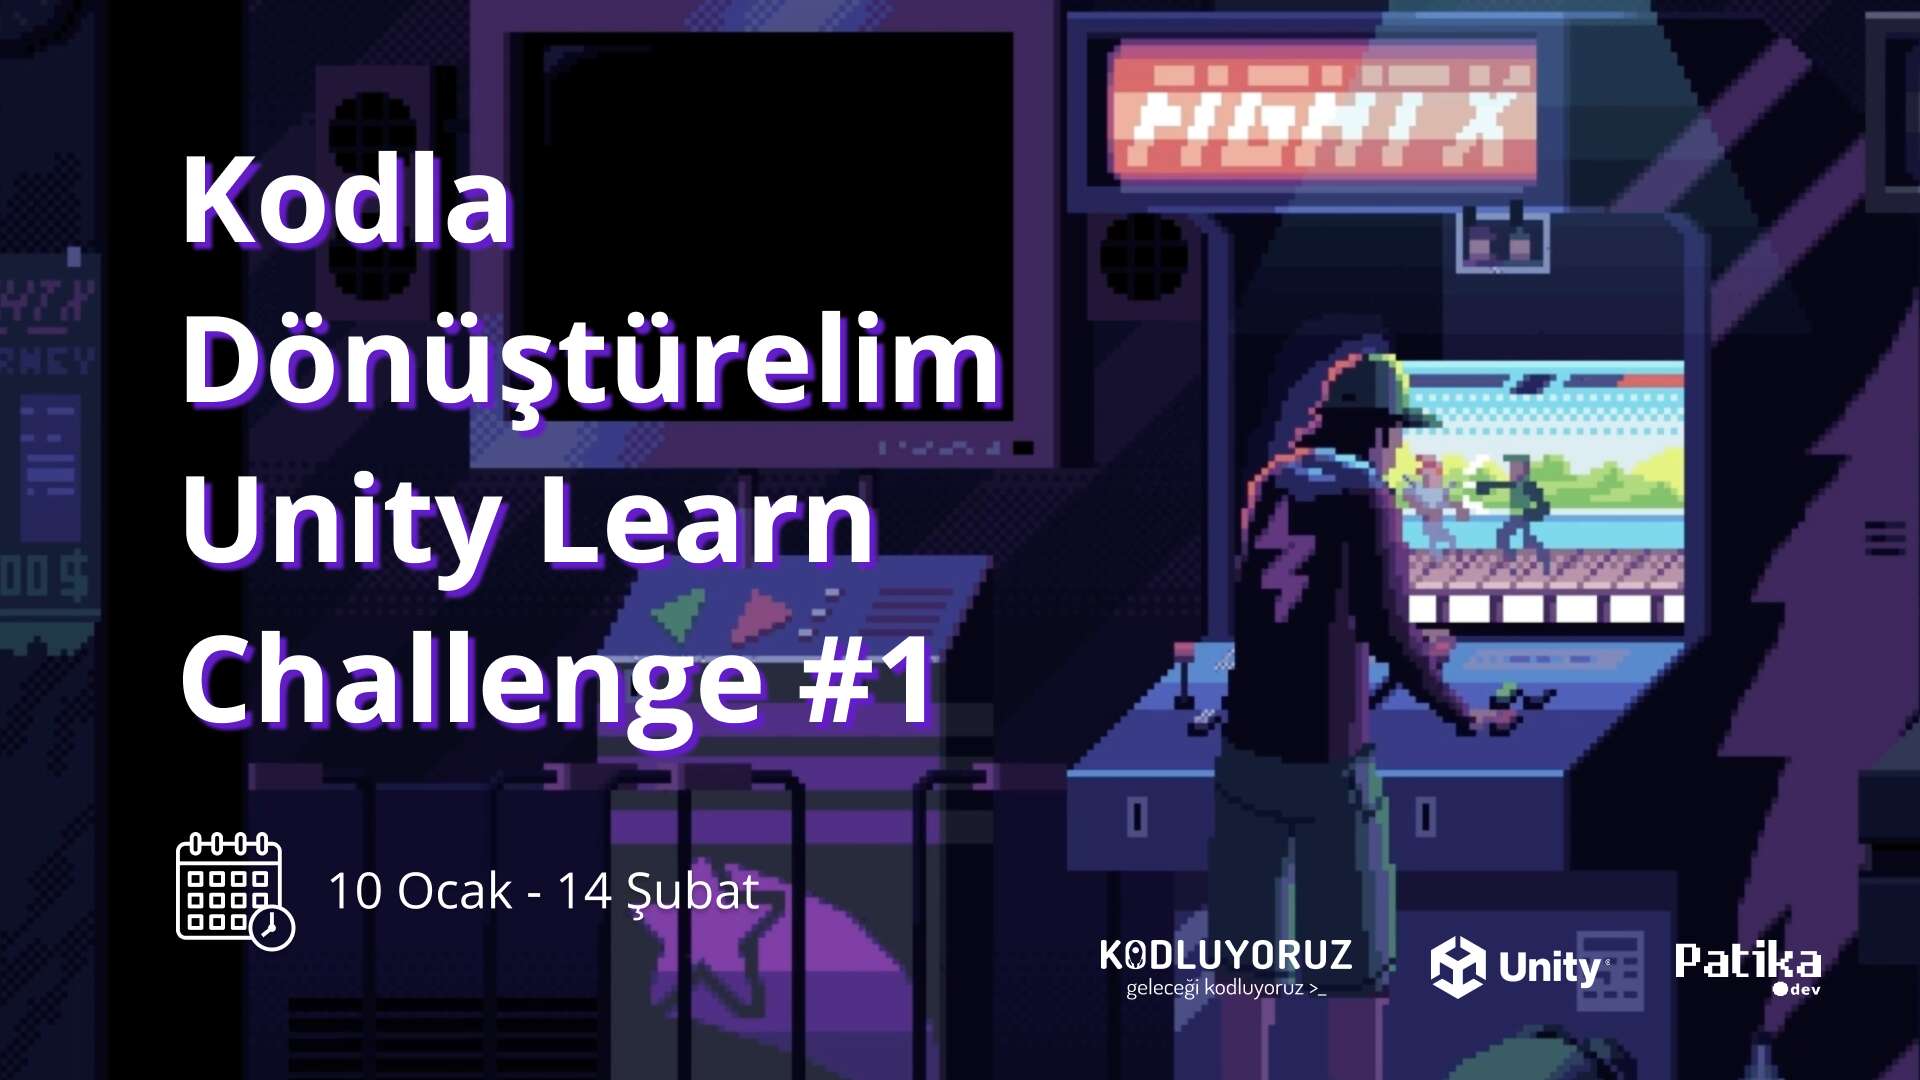 Kodla Dönüştürelim Unity Learn Challenge #1 Kayıtları Başladı!